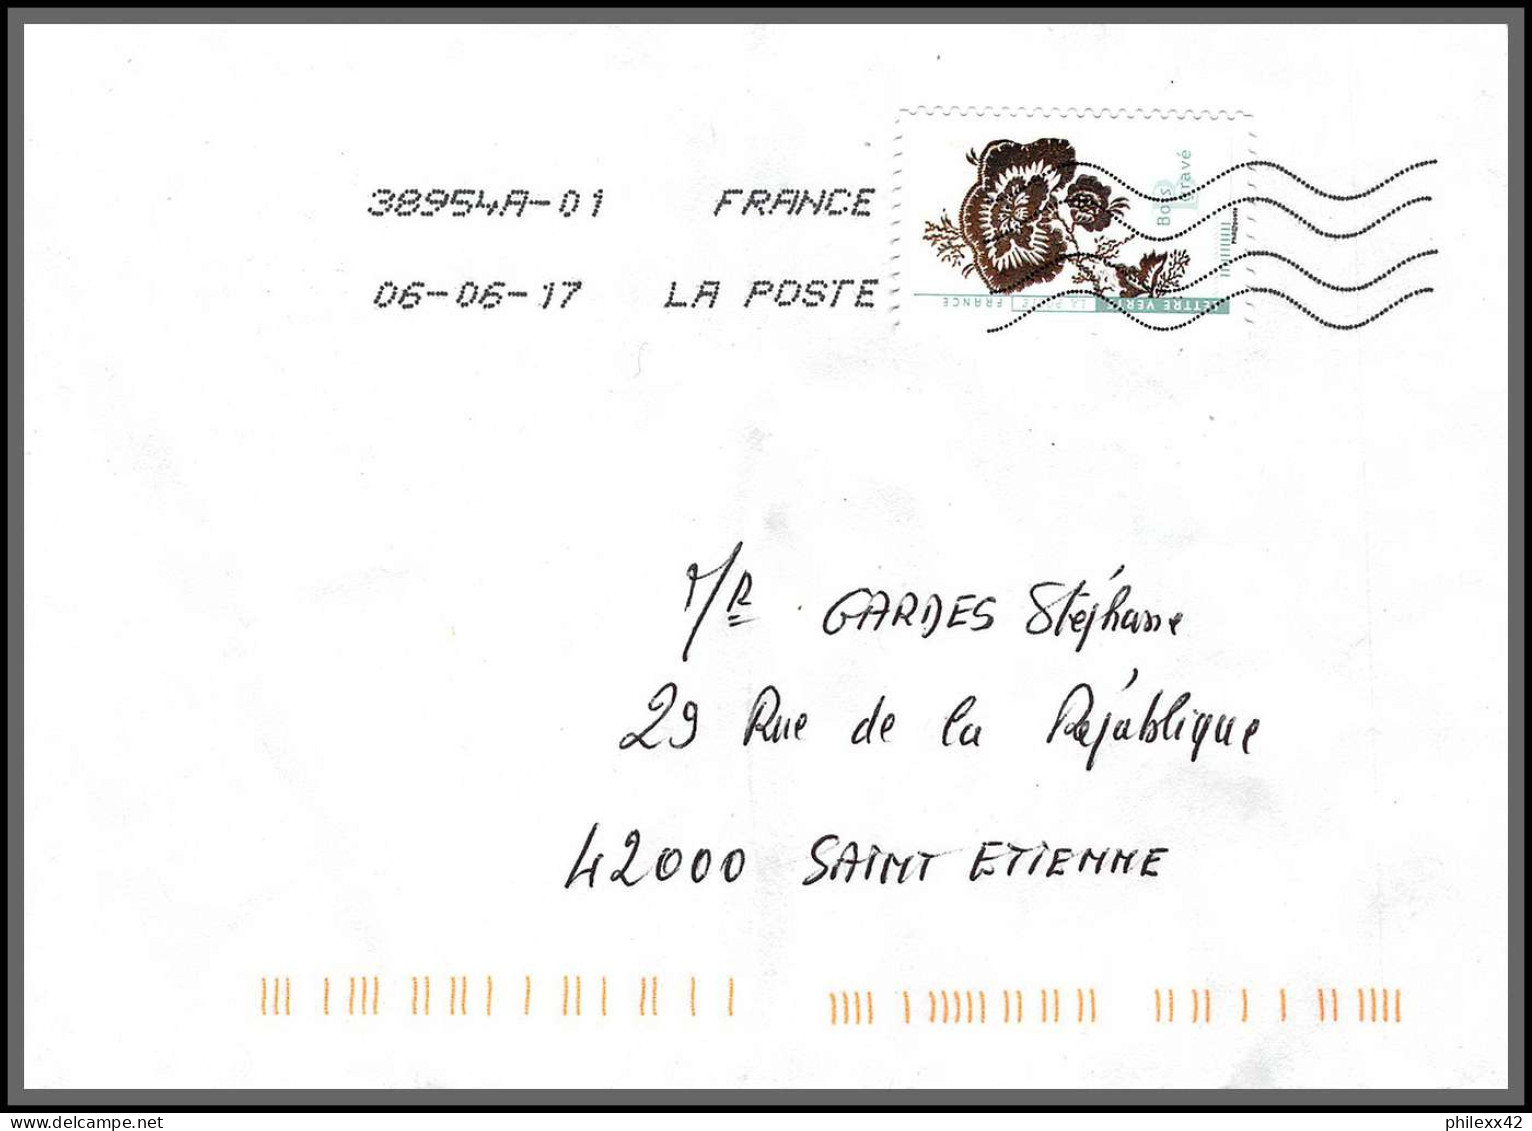 95902 - Lot De 15 Courriers Lettres Enveloppes De L'année 2018 Divers Affranchissements En EUROS - Lettres & Documents